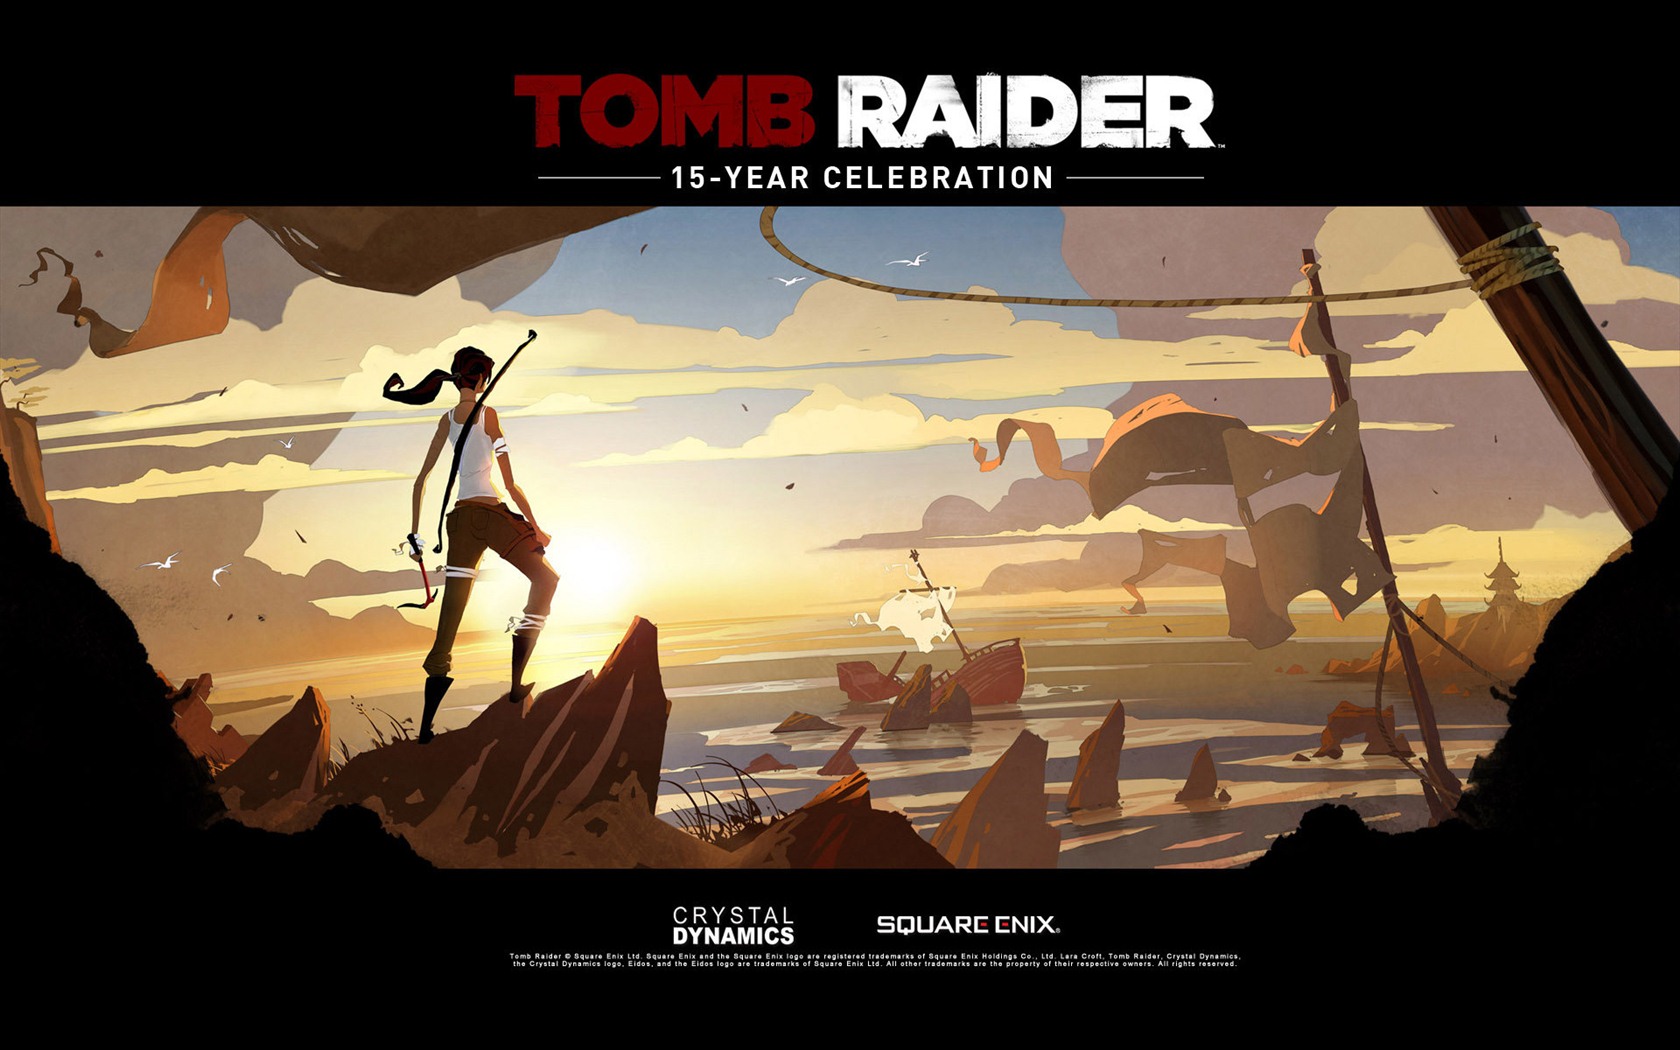 Tomb Raider 15-Year Celebration 古墓丽影15周年纪念版 高清壁纸13 - 1680x1050